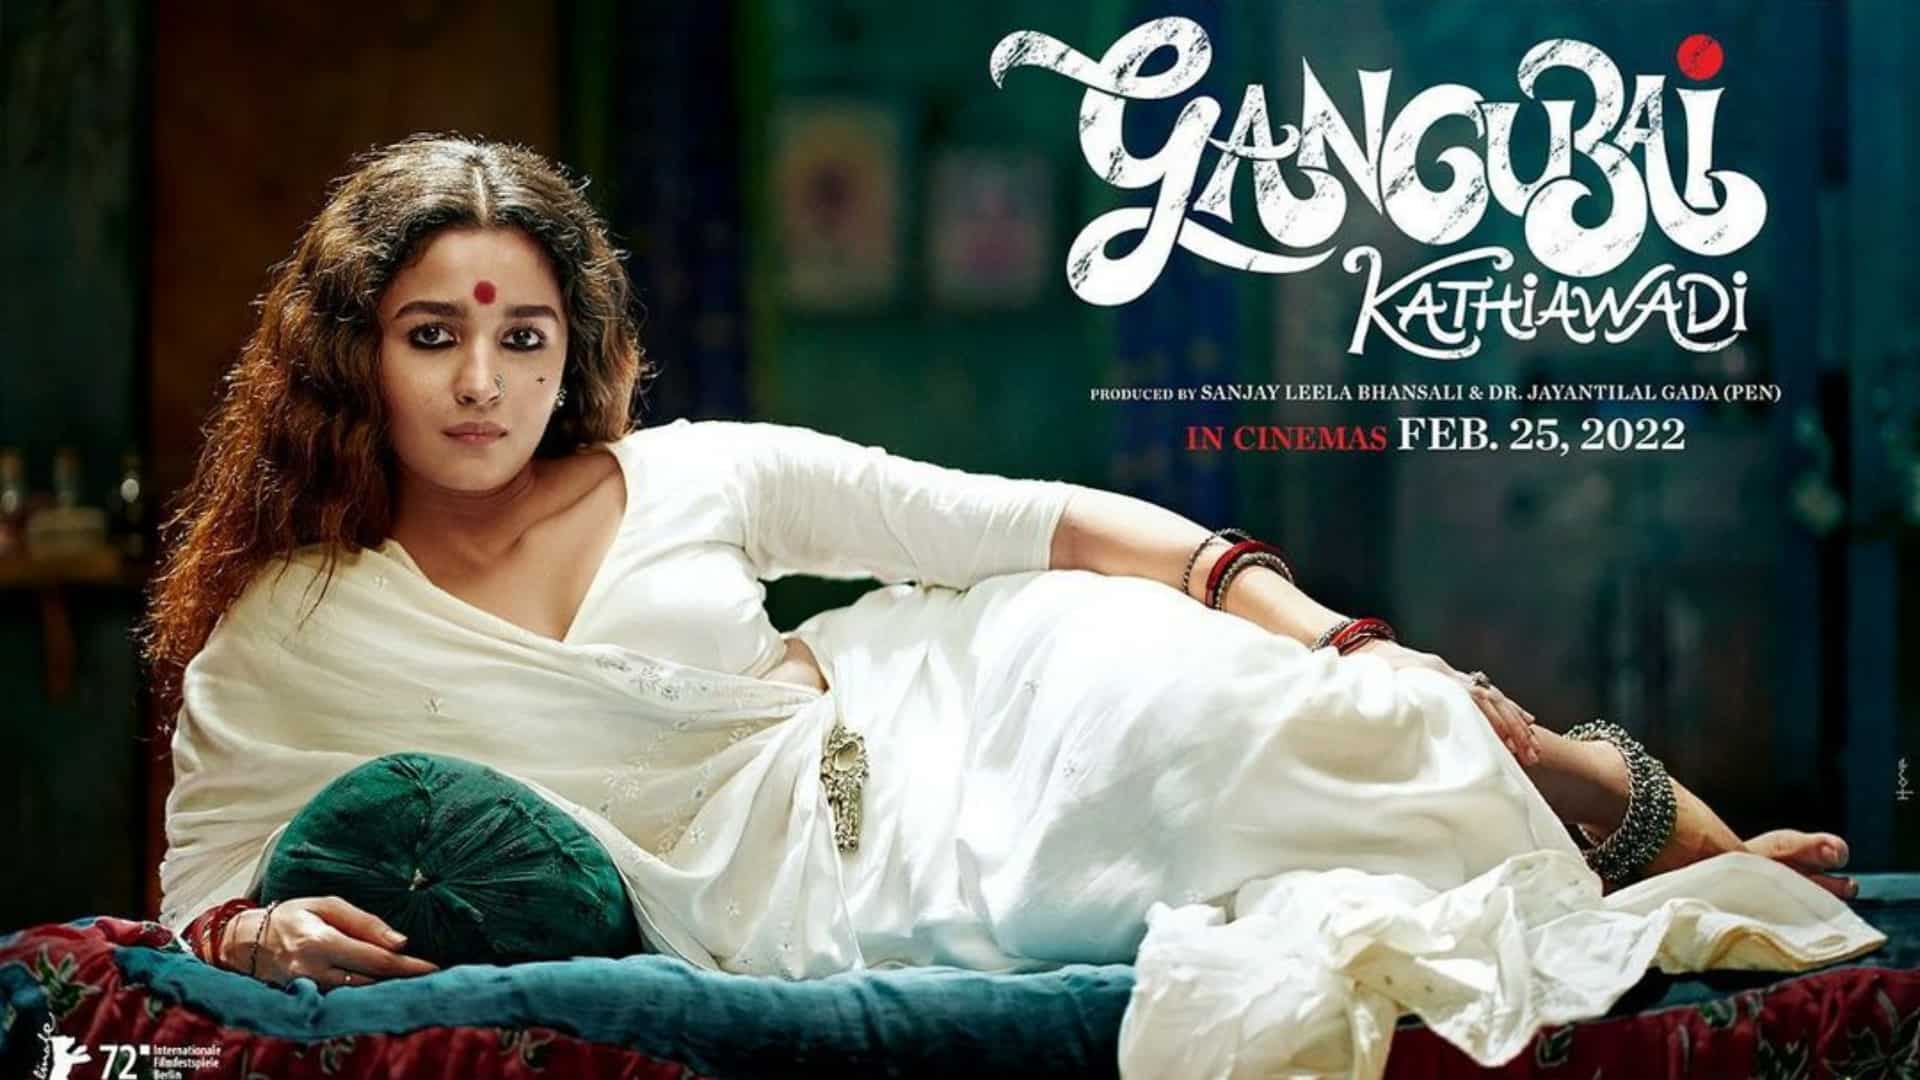 What's the plot of the Gangubai Kathiawadi film?